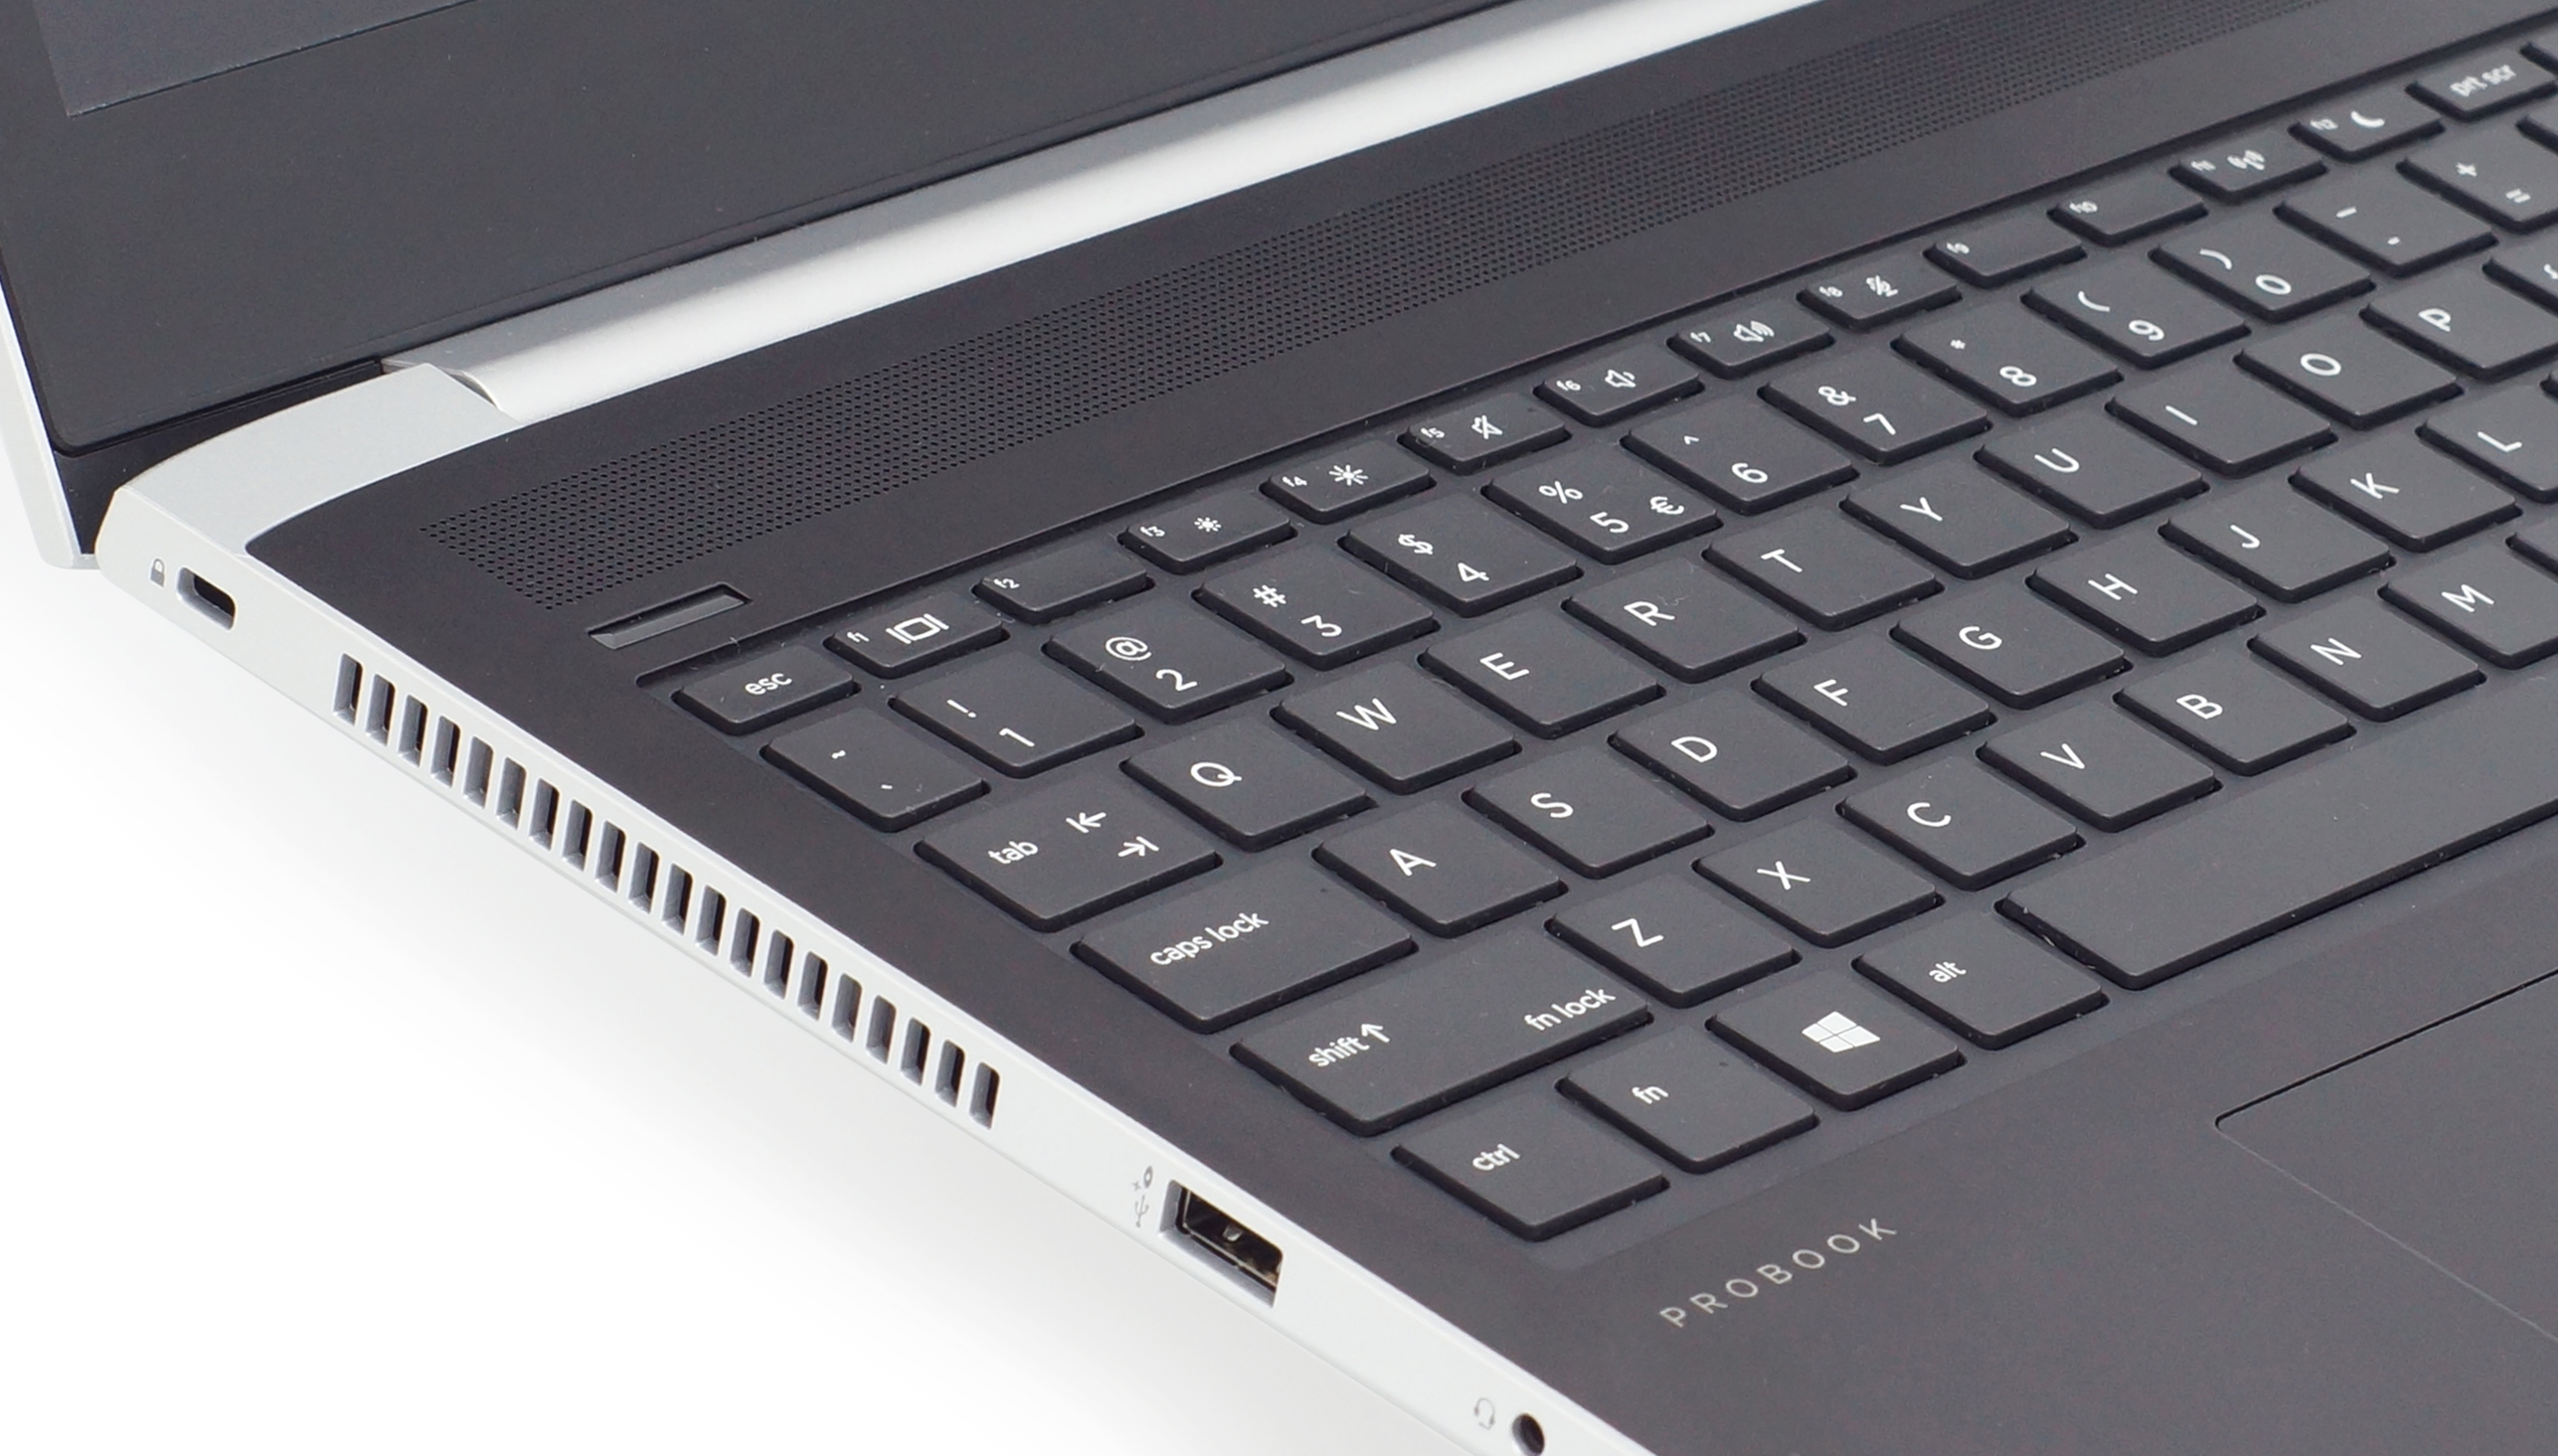 HP ProBook 450 G5 (i5-8250U, FHD) Laptop Review - NotebookCheck